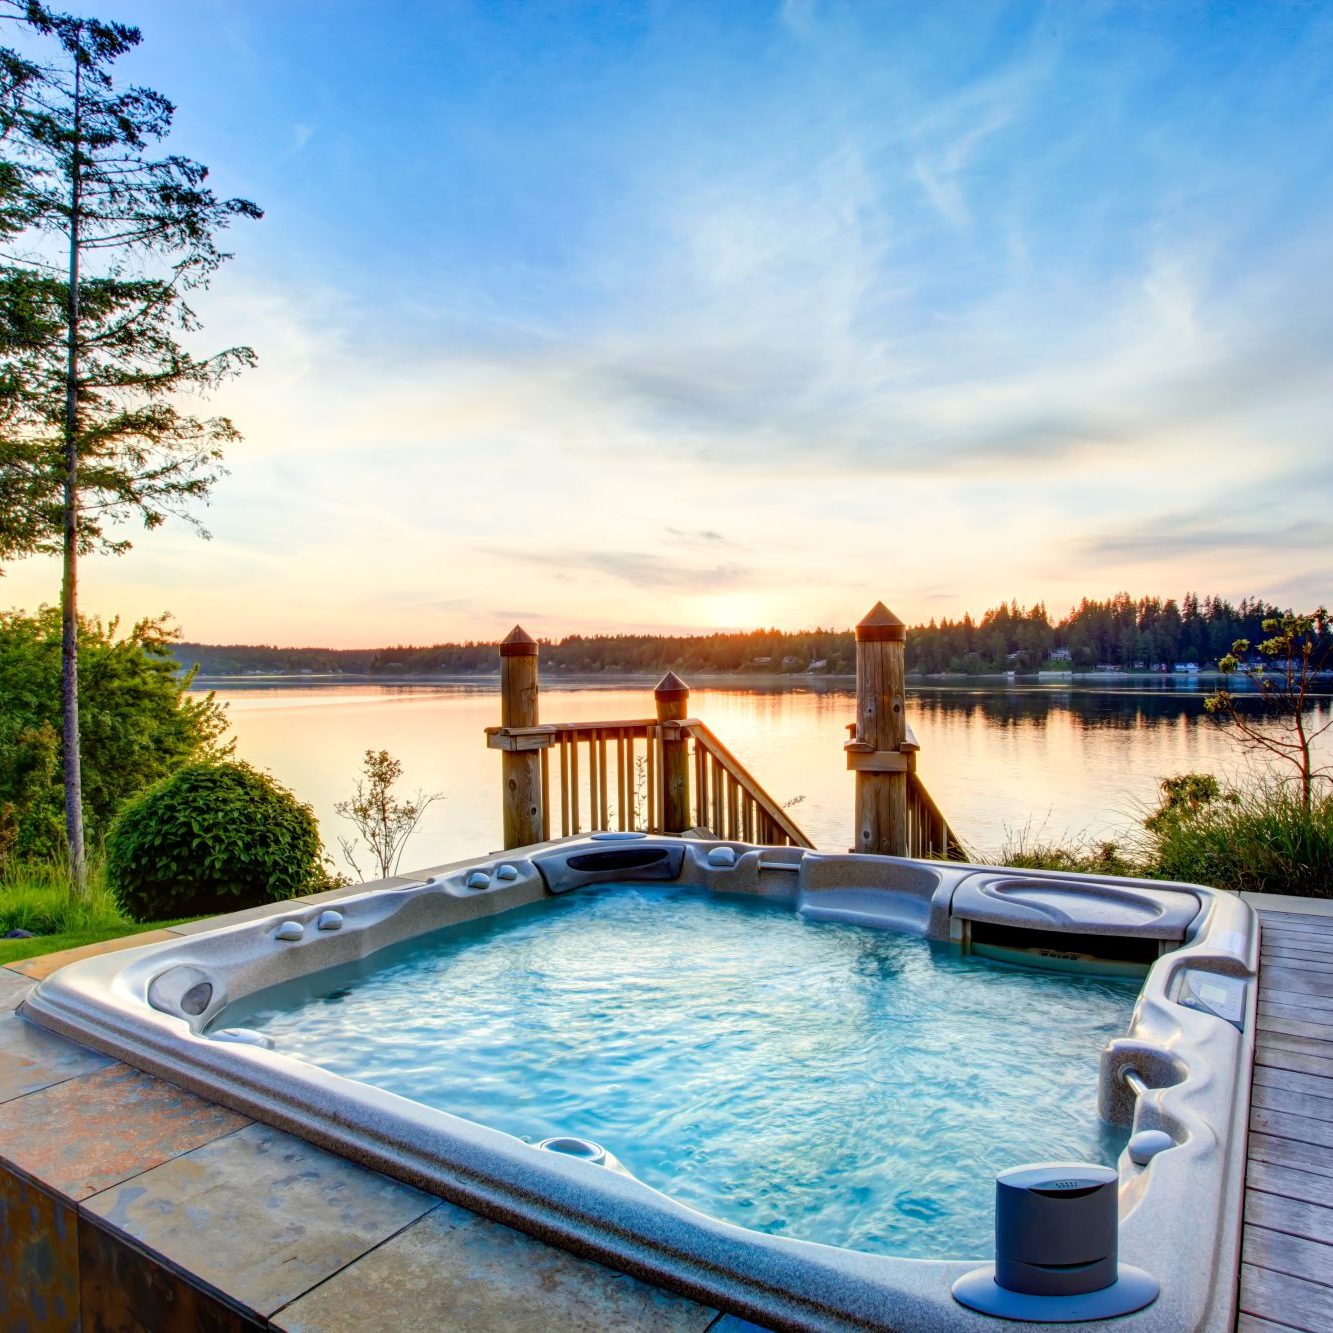 Lakeside hot tub at sun set